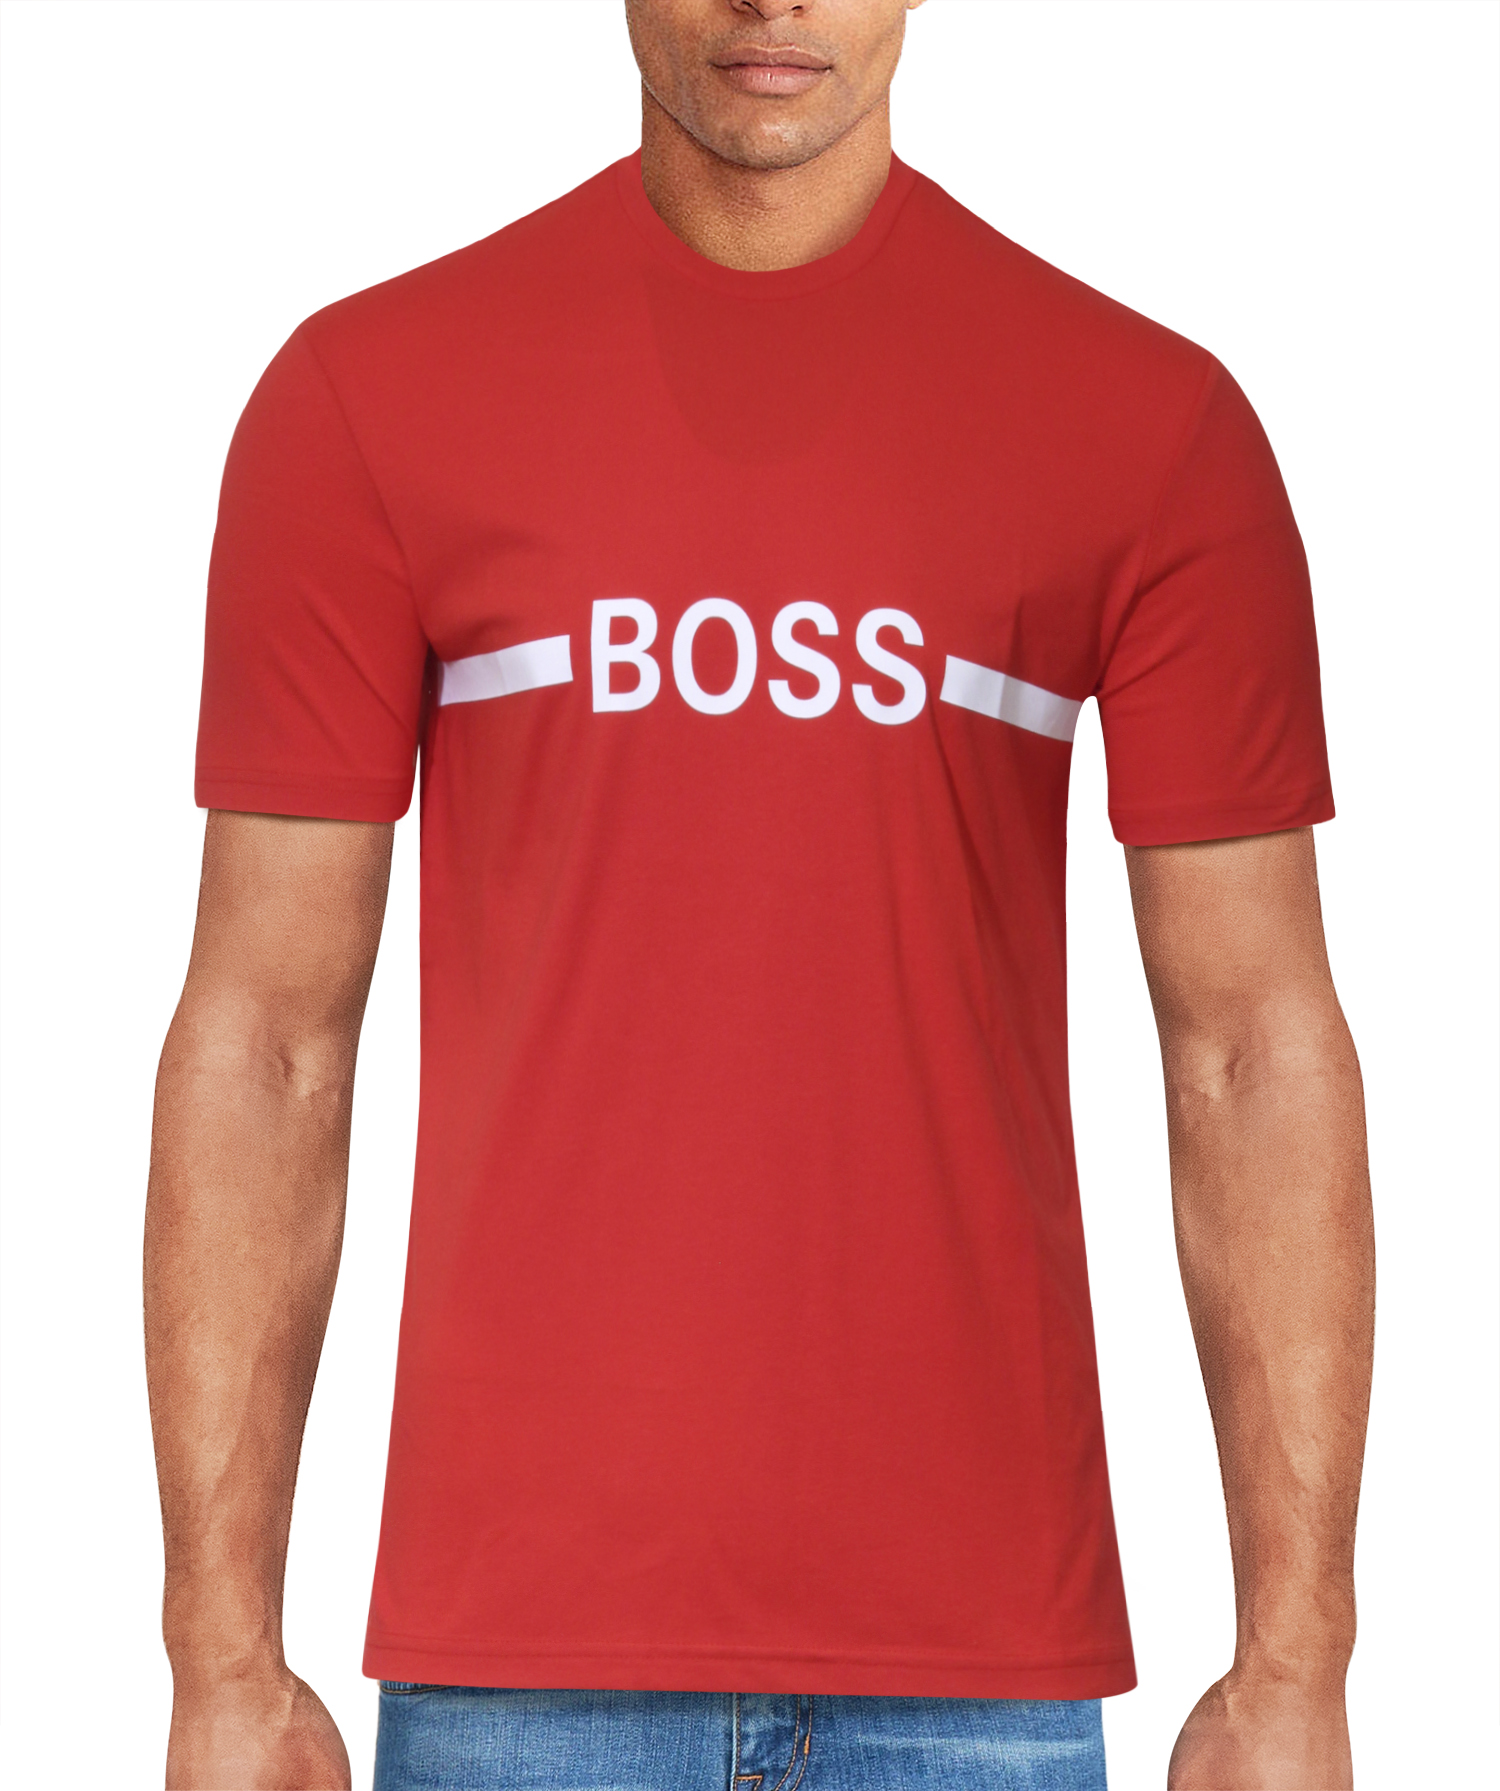 Hugo Boss UV Protection Men's T-Shirt Red